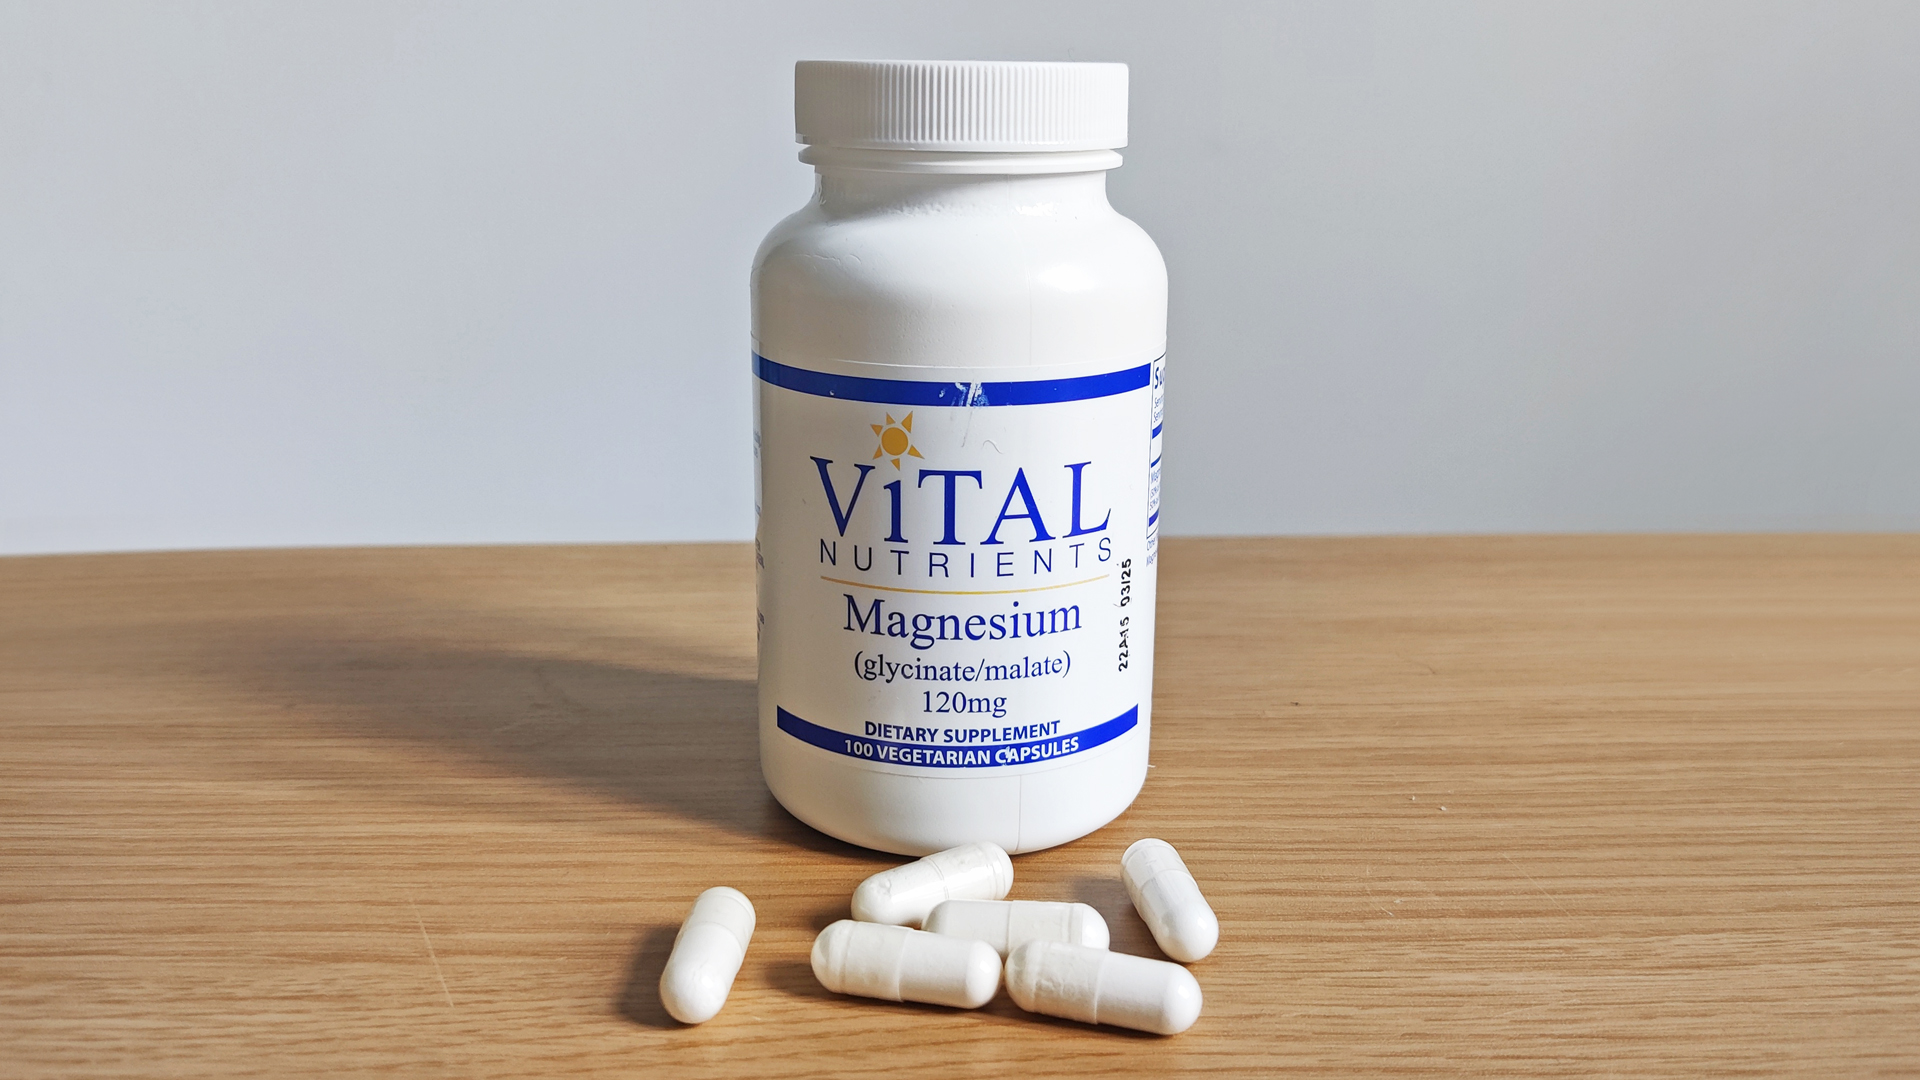 Vital Nutrients magnesium supplement